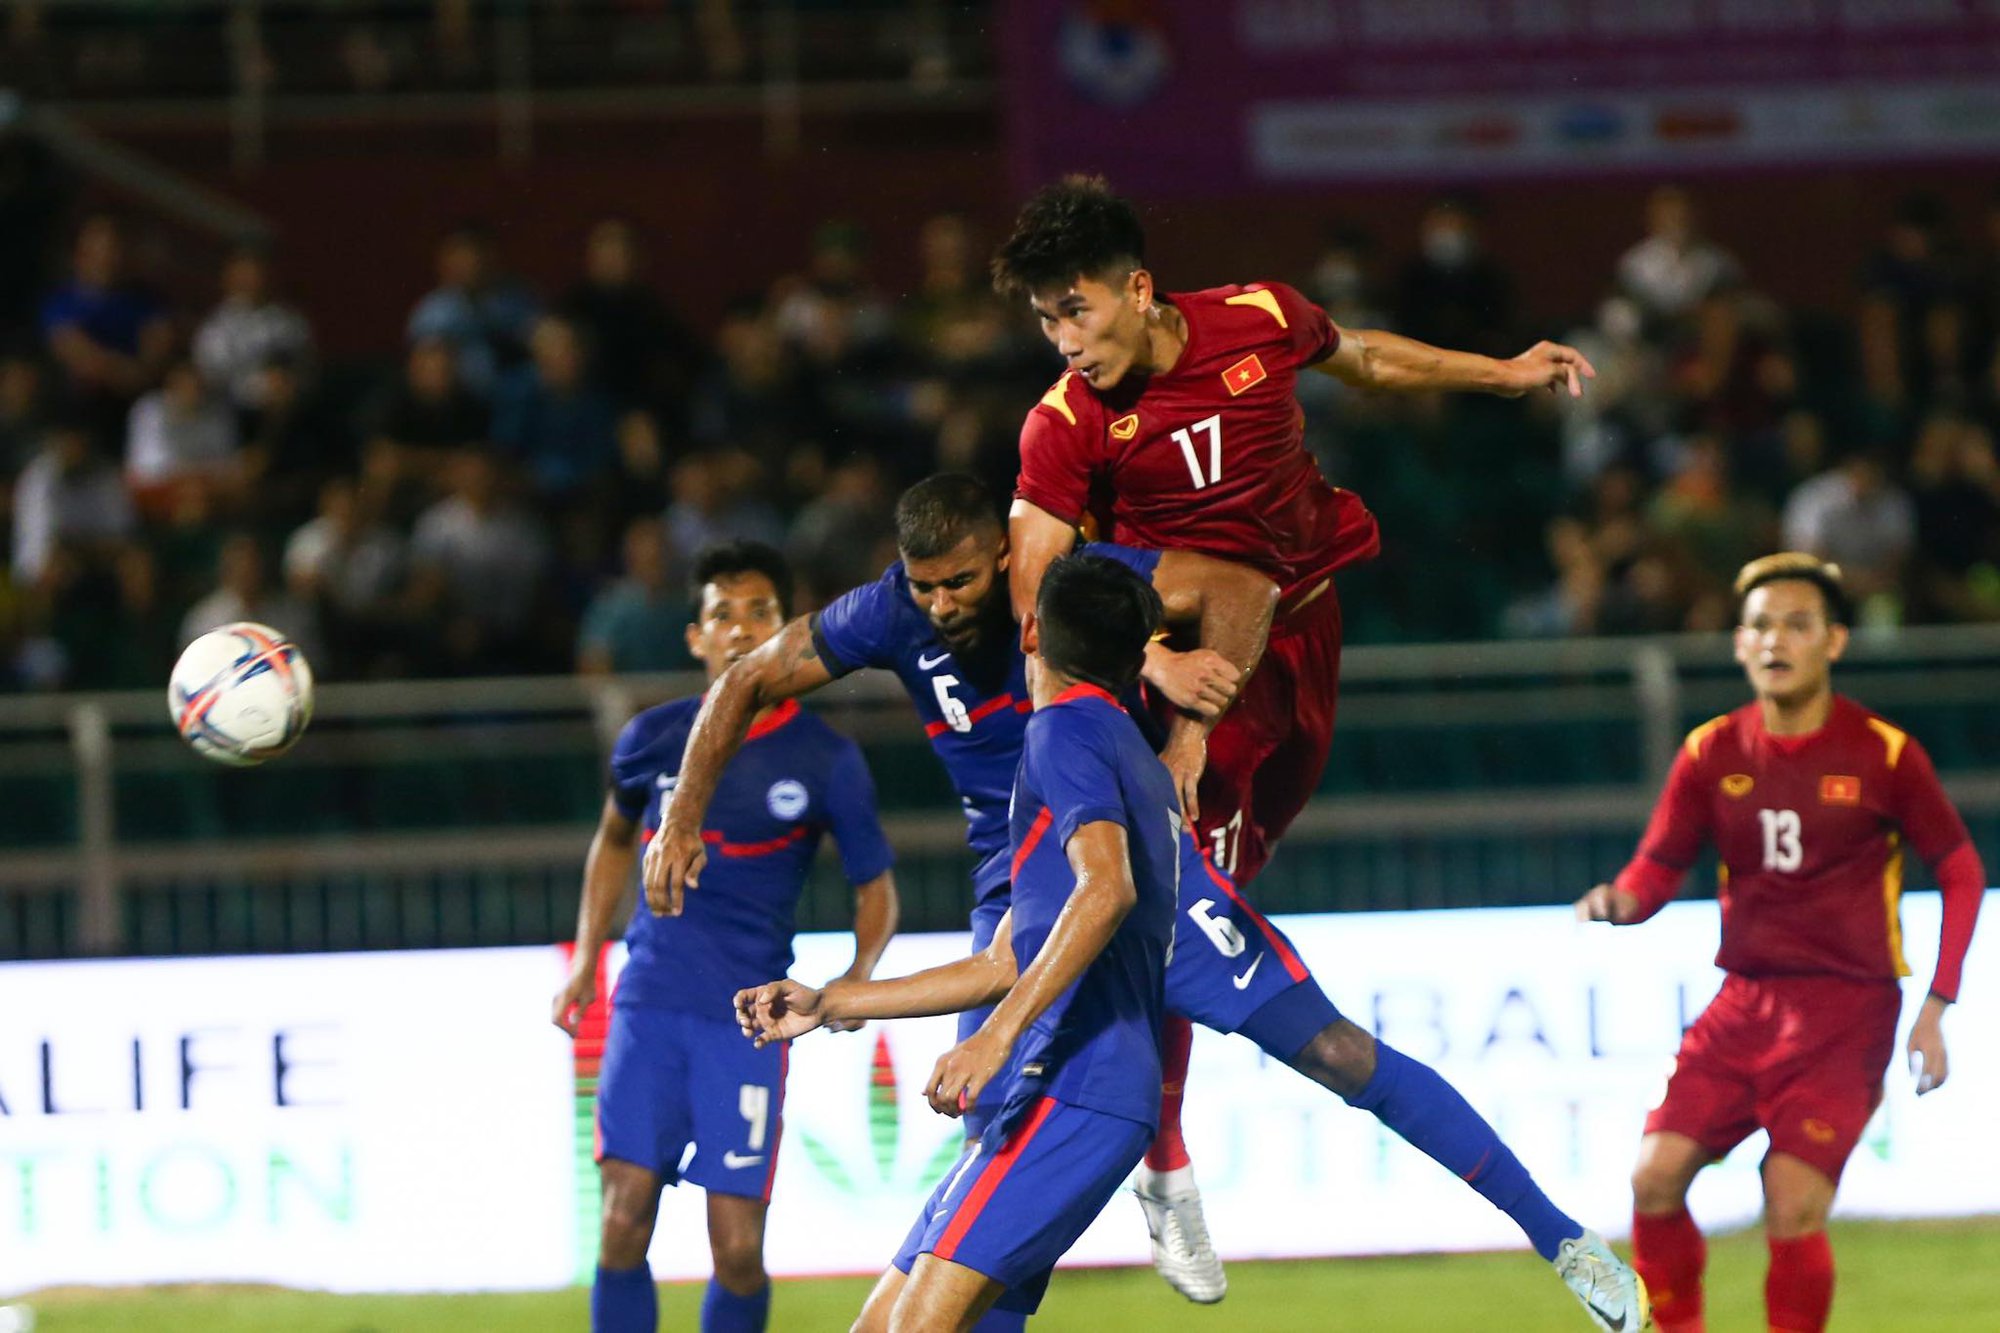 Cầu thủ trẻ liên tiếp lập công, đội tuyển Việt Nam giành chiến thắng 4-0 Singapore trận ra quân - Ảnh 9.